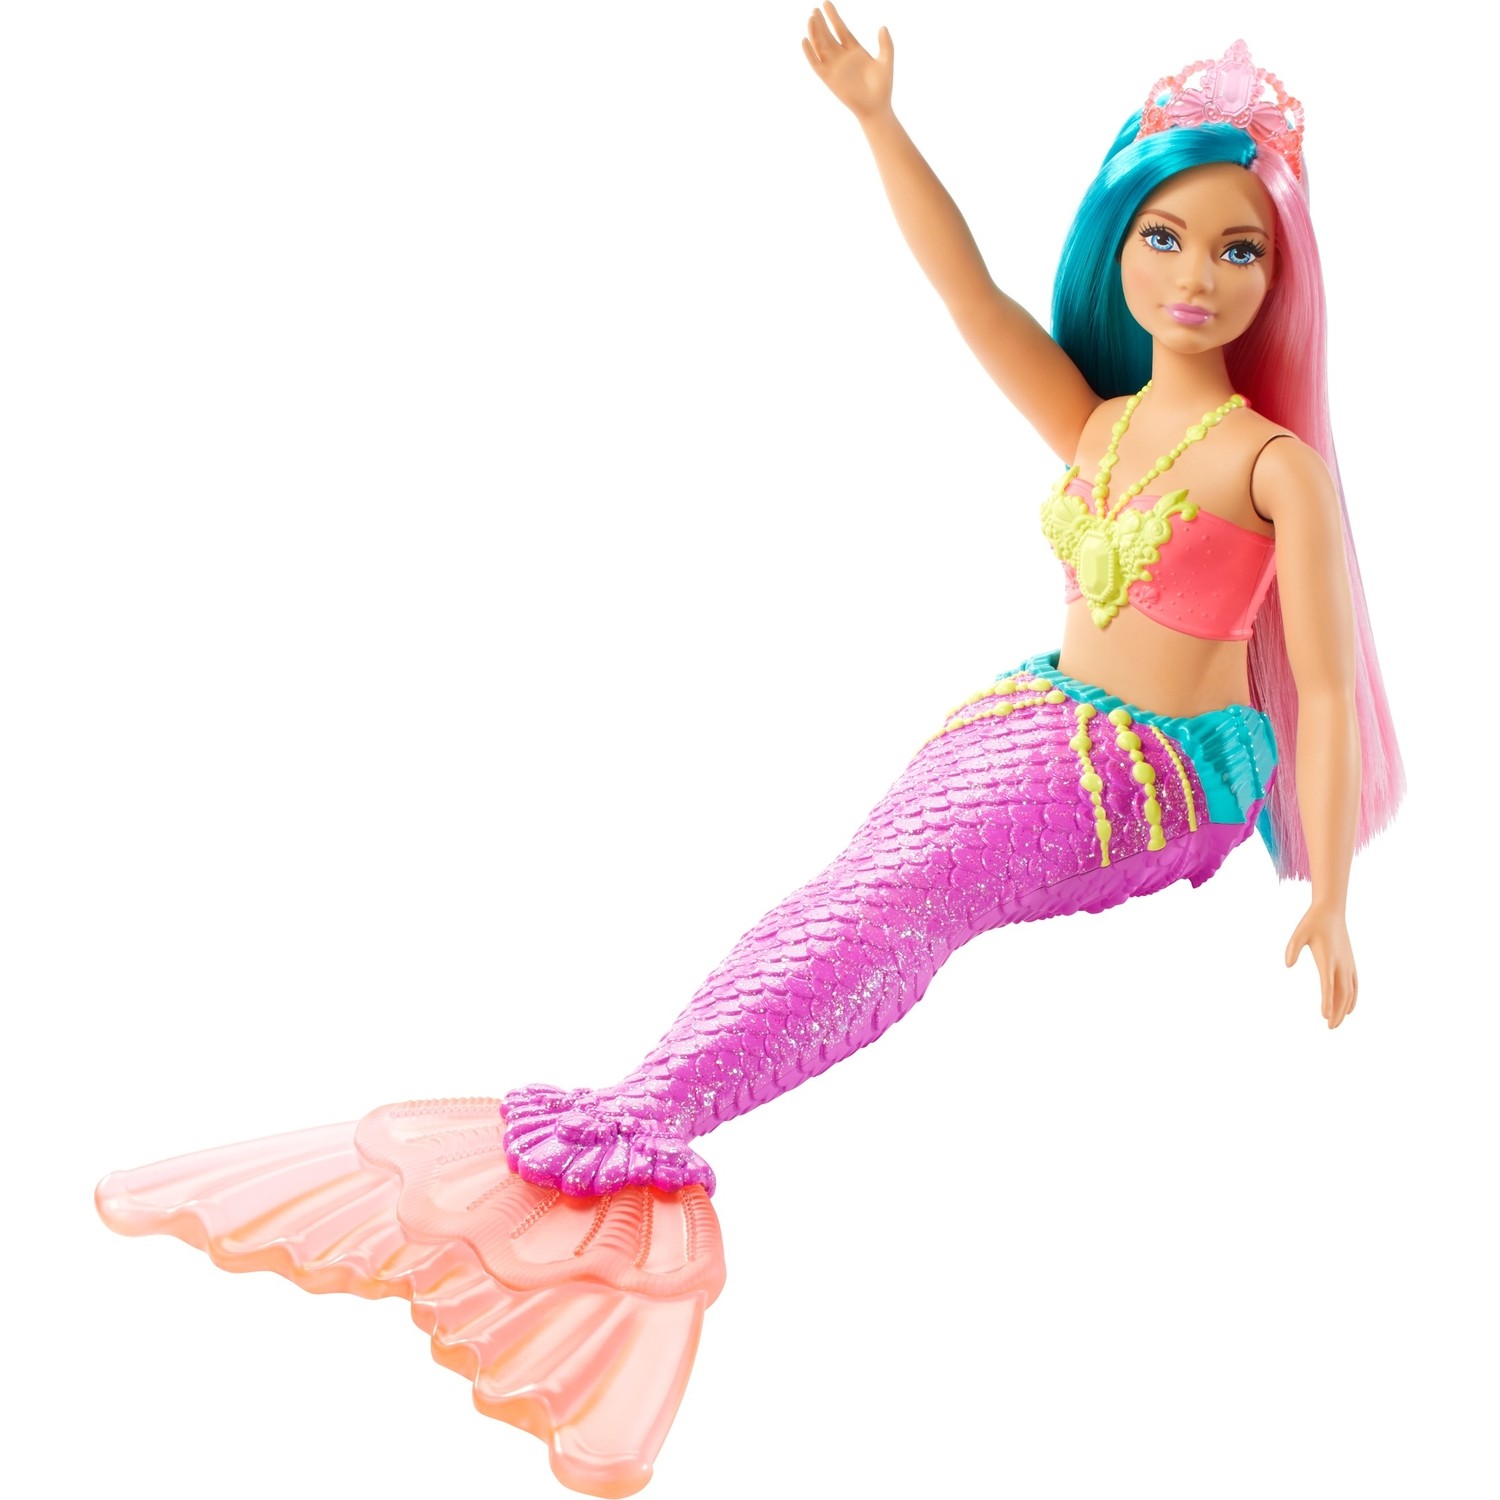 Куклы русалки Barbie Dreamtopia светлая кожа, синие, розовые волосы GJK11 русалки